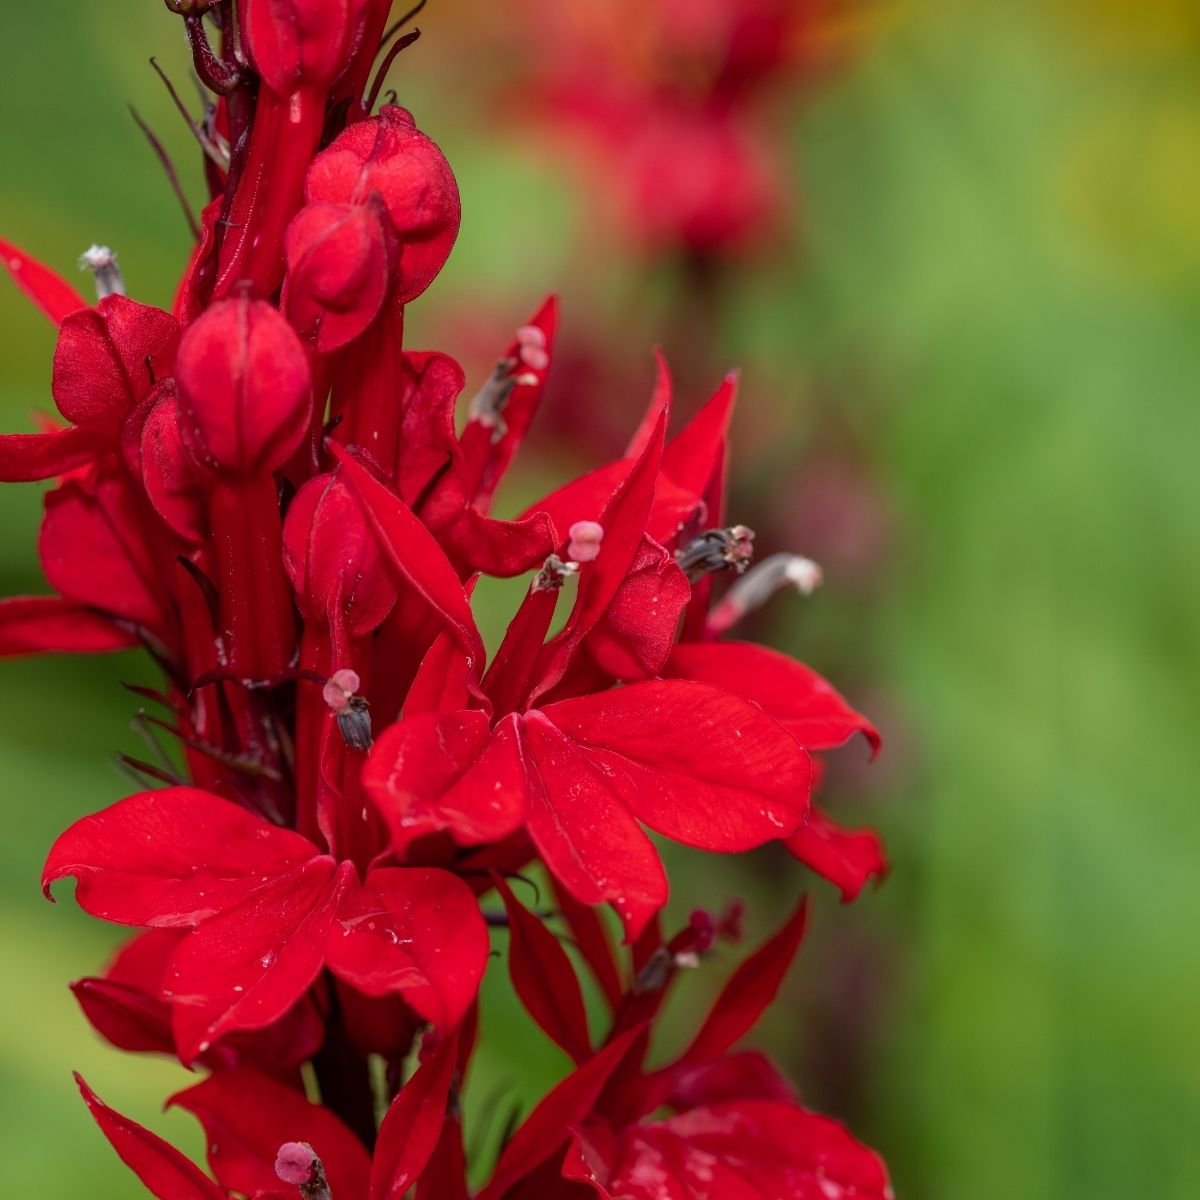 Lobelia cardinalis - red flowers